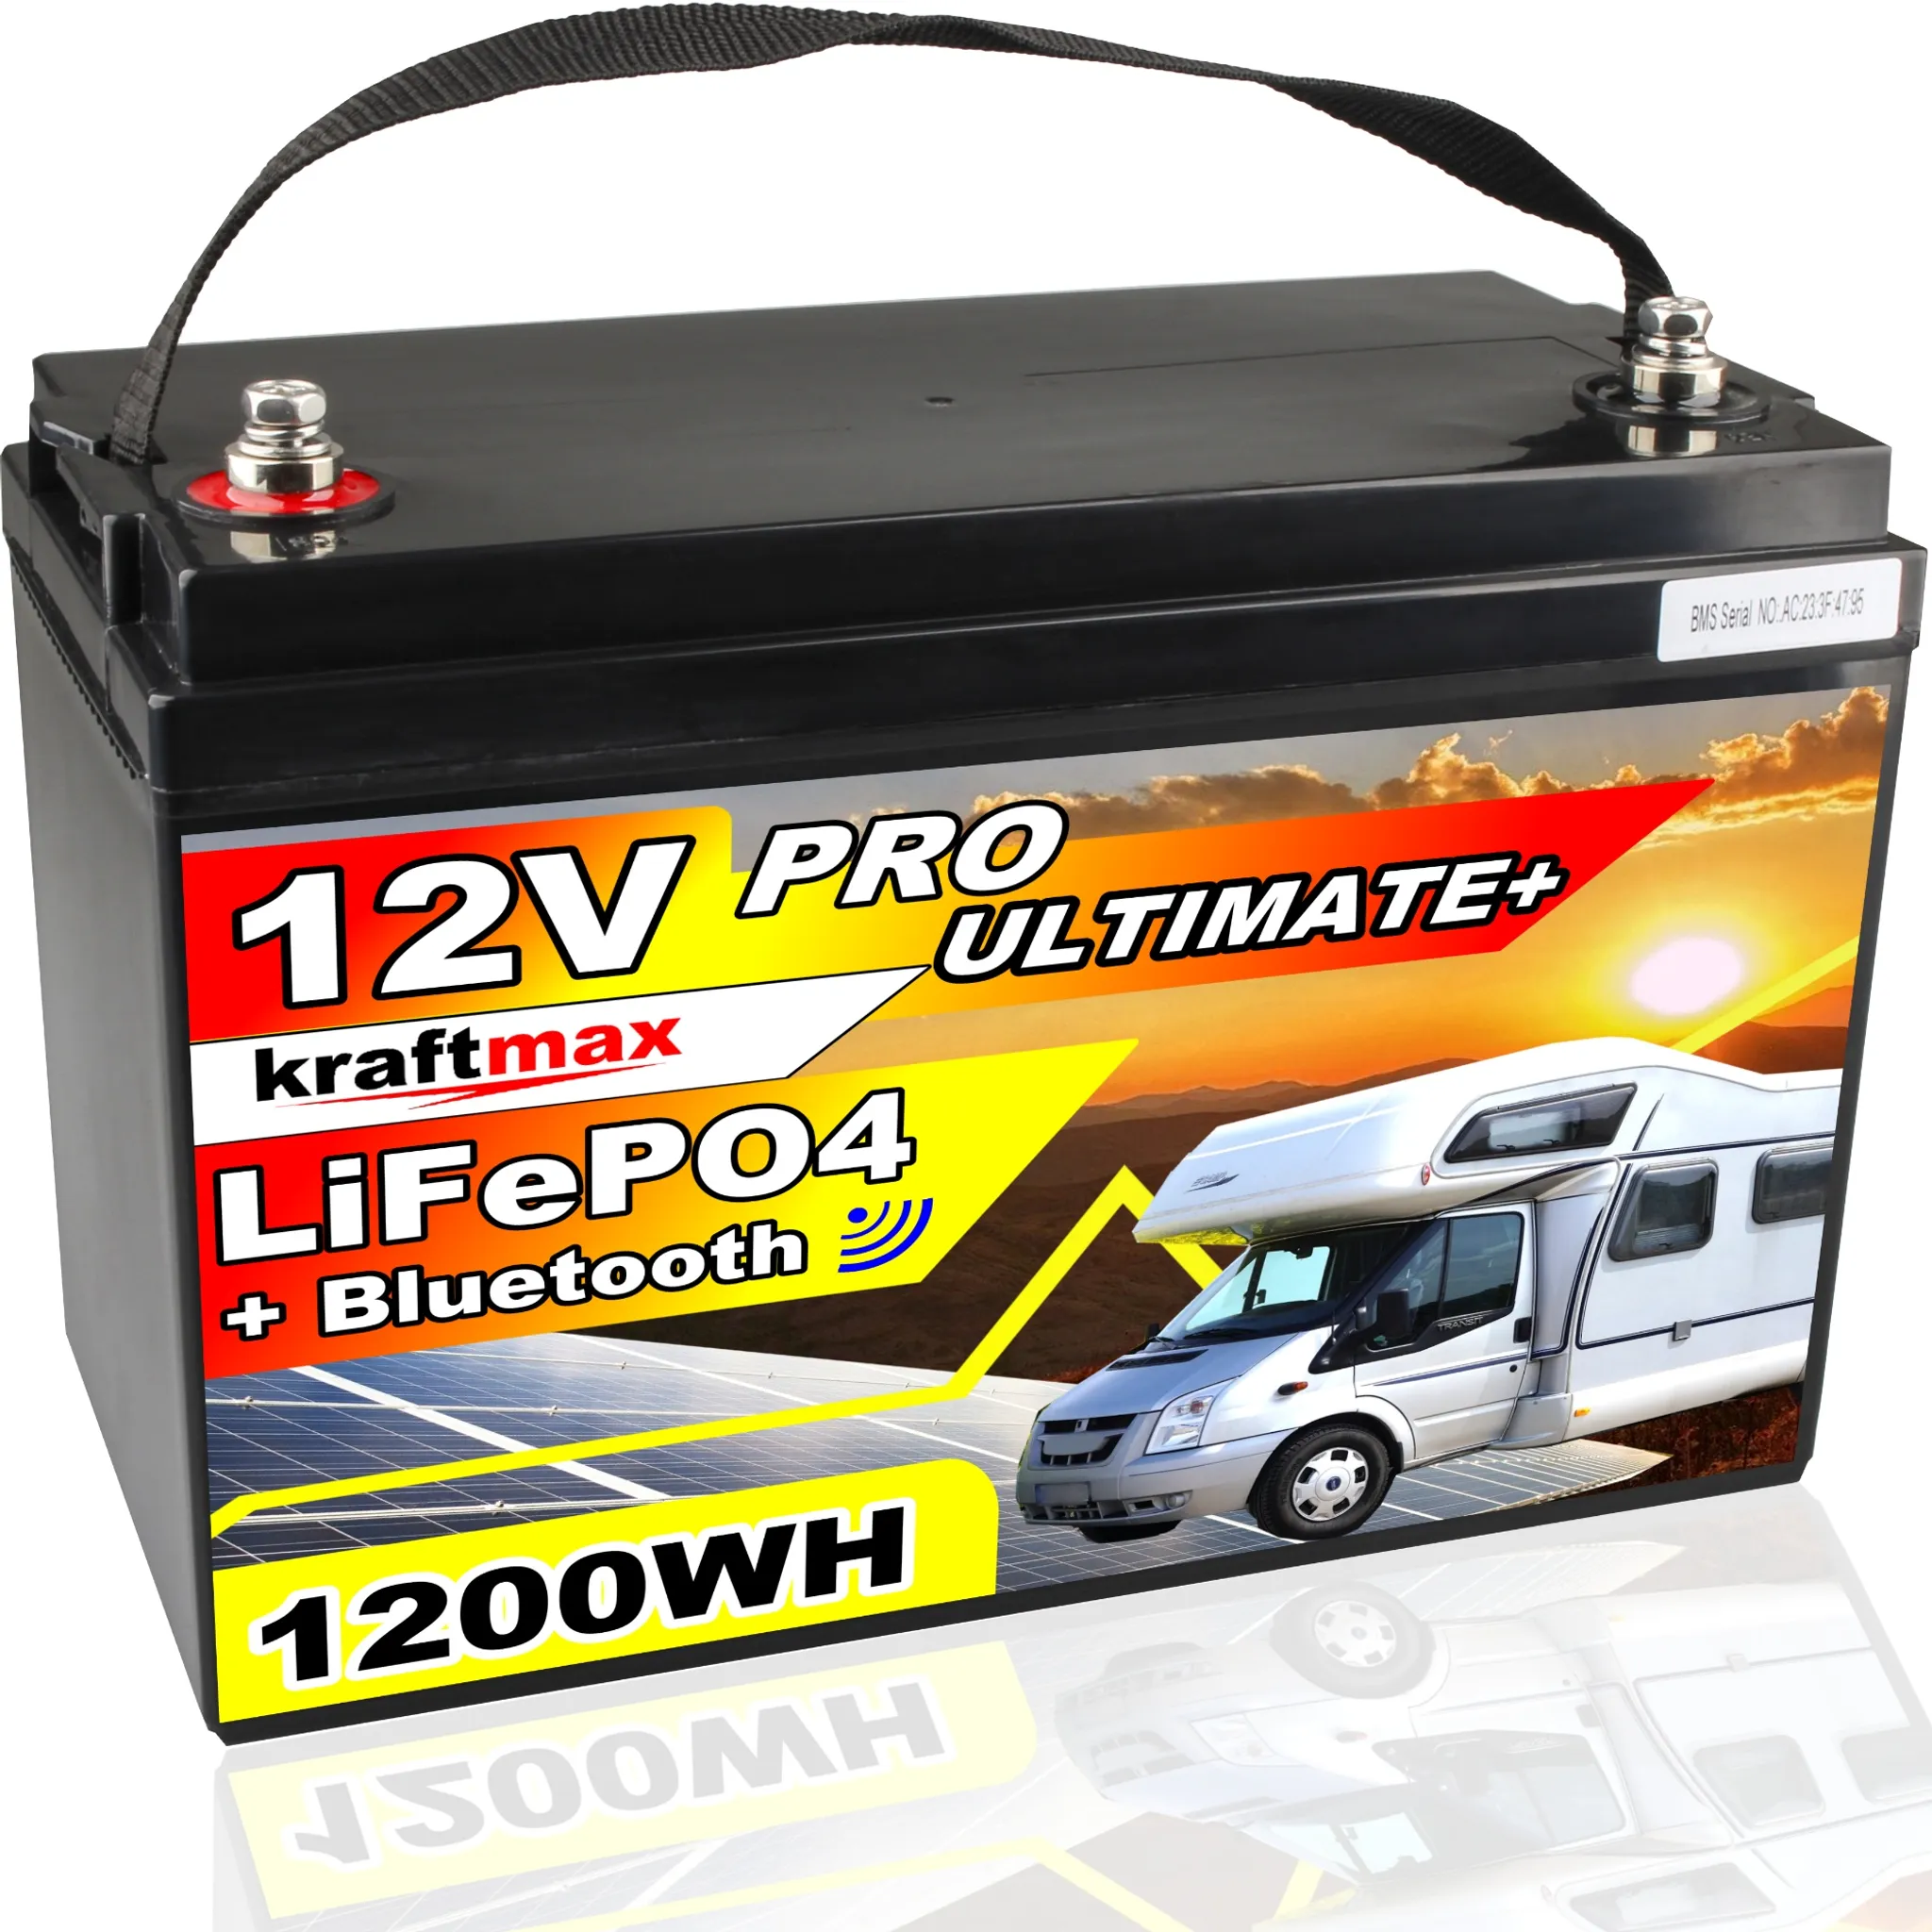 Q-Batteries Lithium Akku 12-150 12,8V 150Ah 1920Wh LiFePO4 Lithium